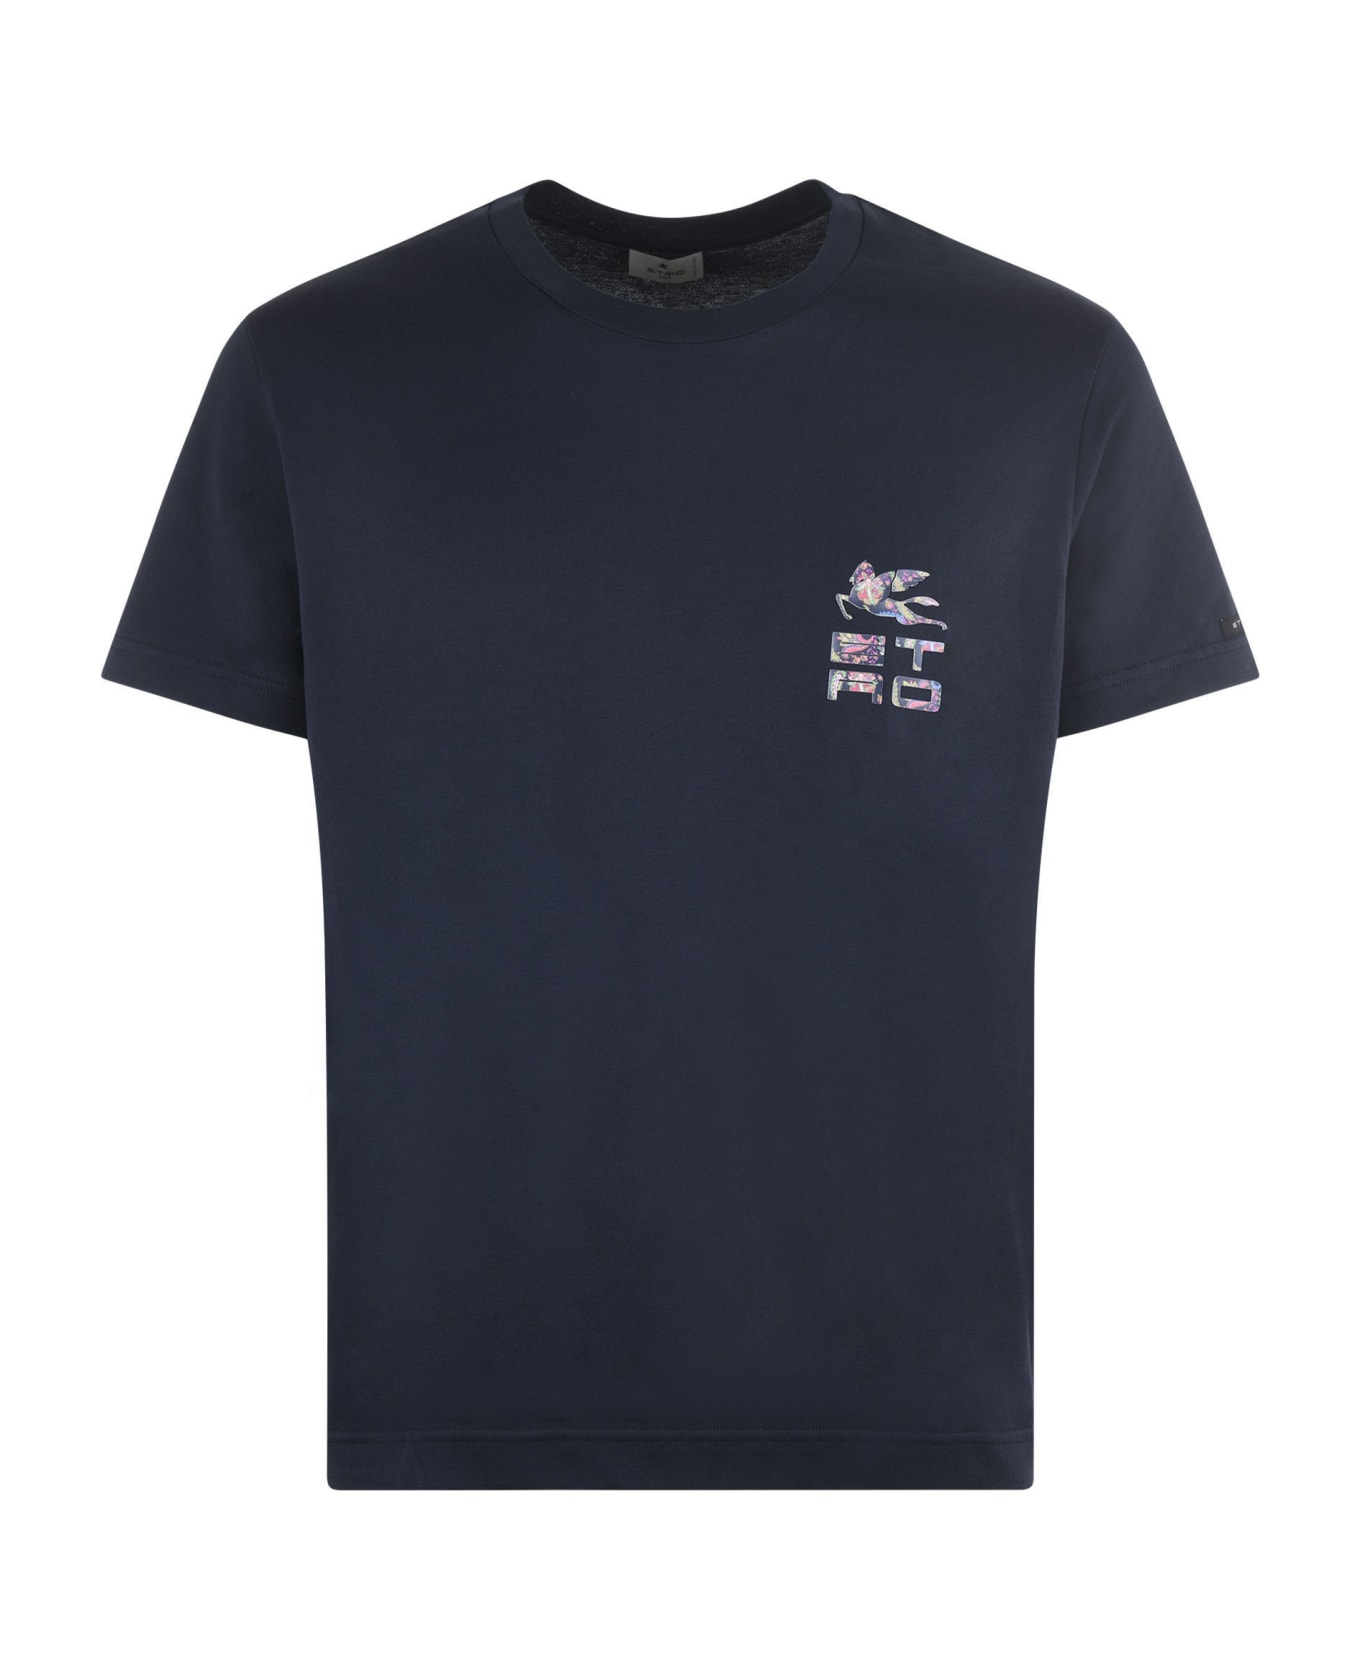 Etro T-shirt Etro In Cotone Disponibile Store Scafati - Blu scuro シャツ